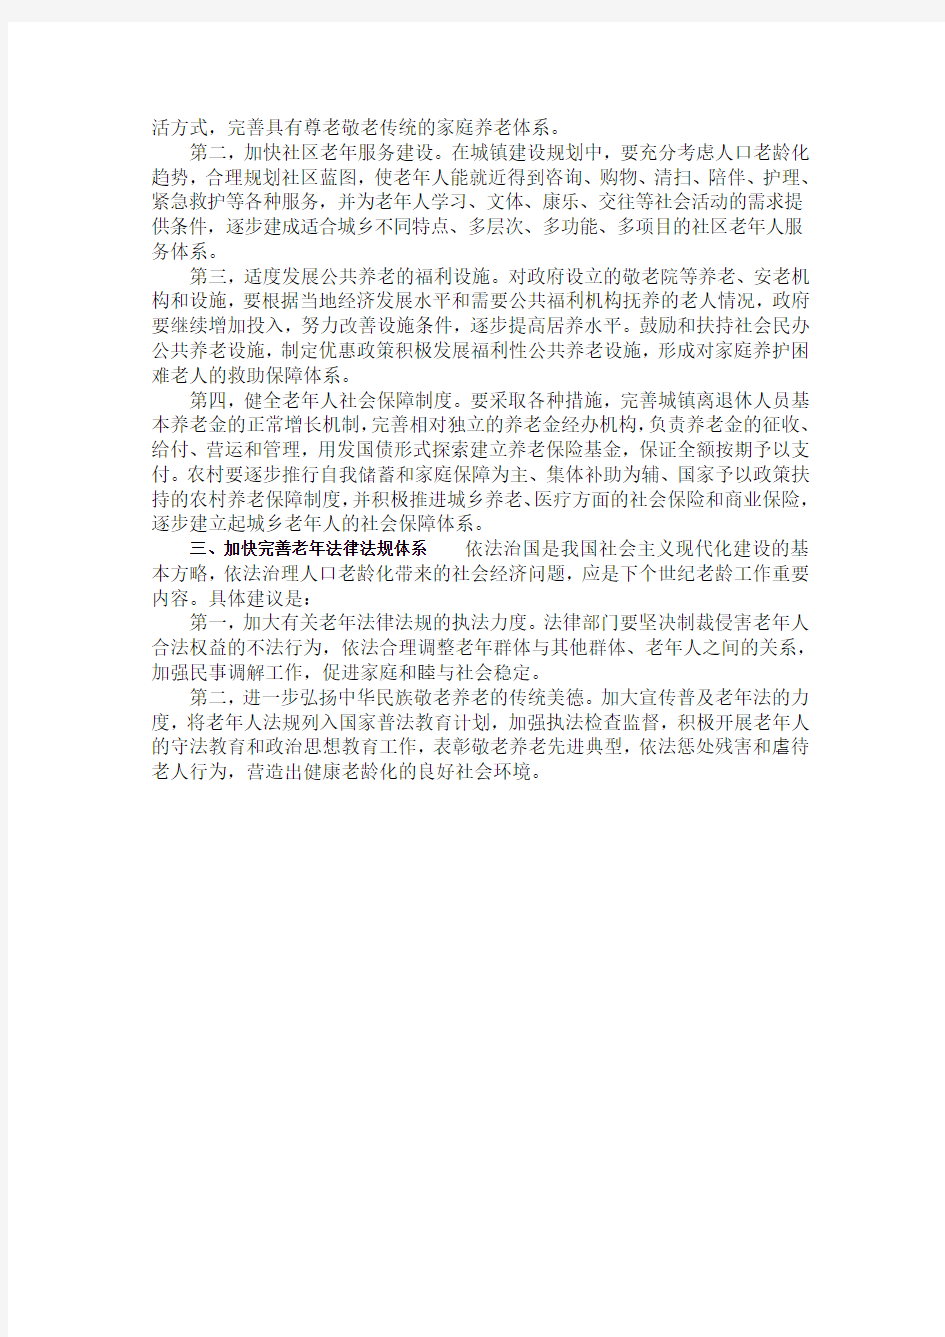 2013年河南公务员考试申论热点 国内养老盲区